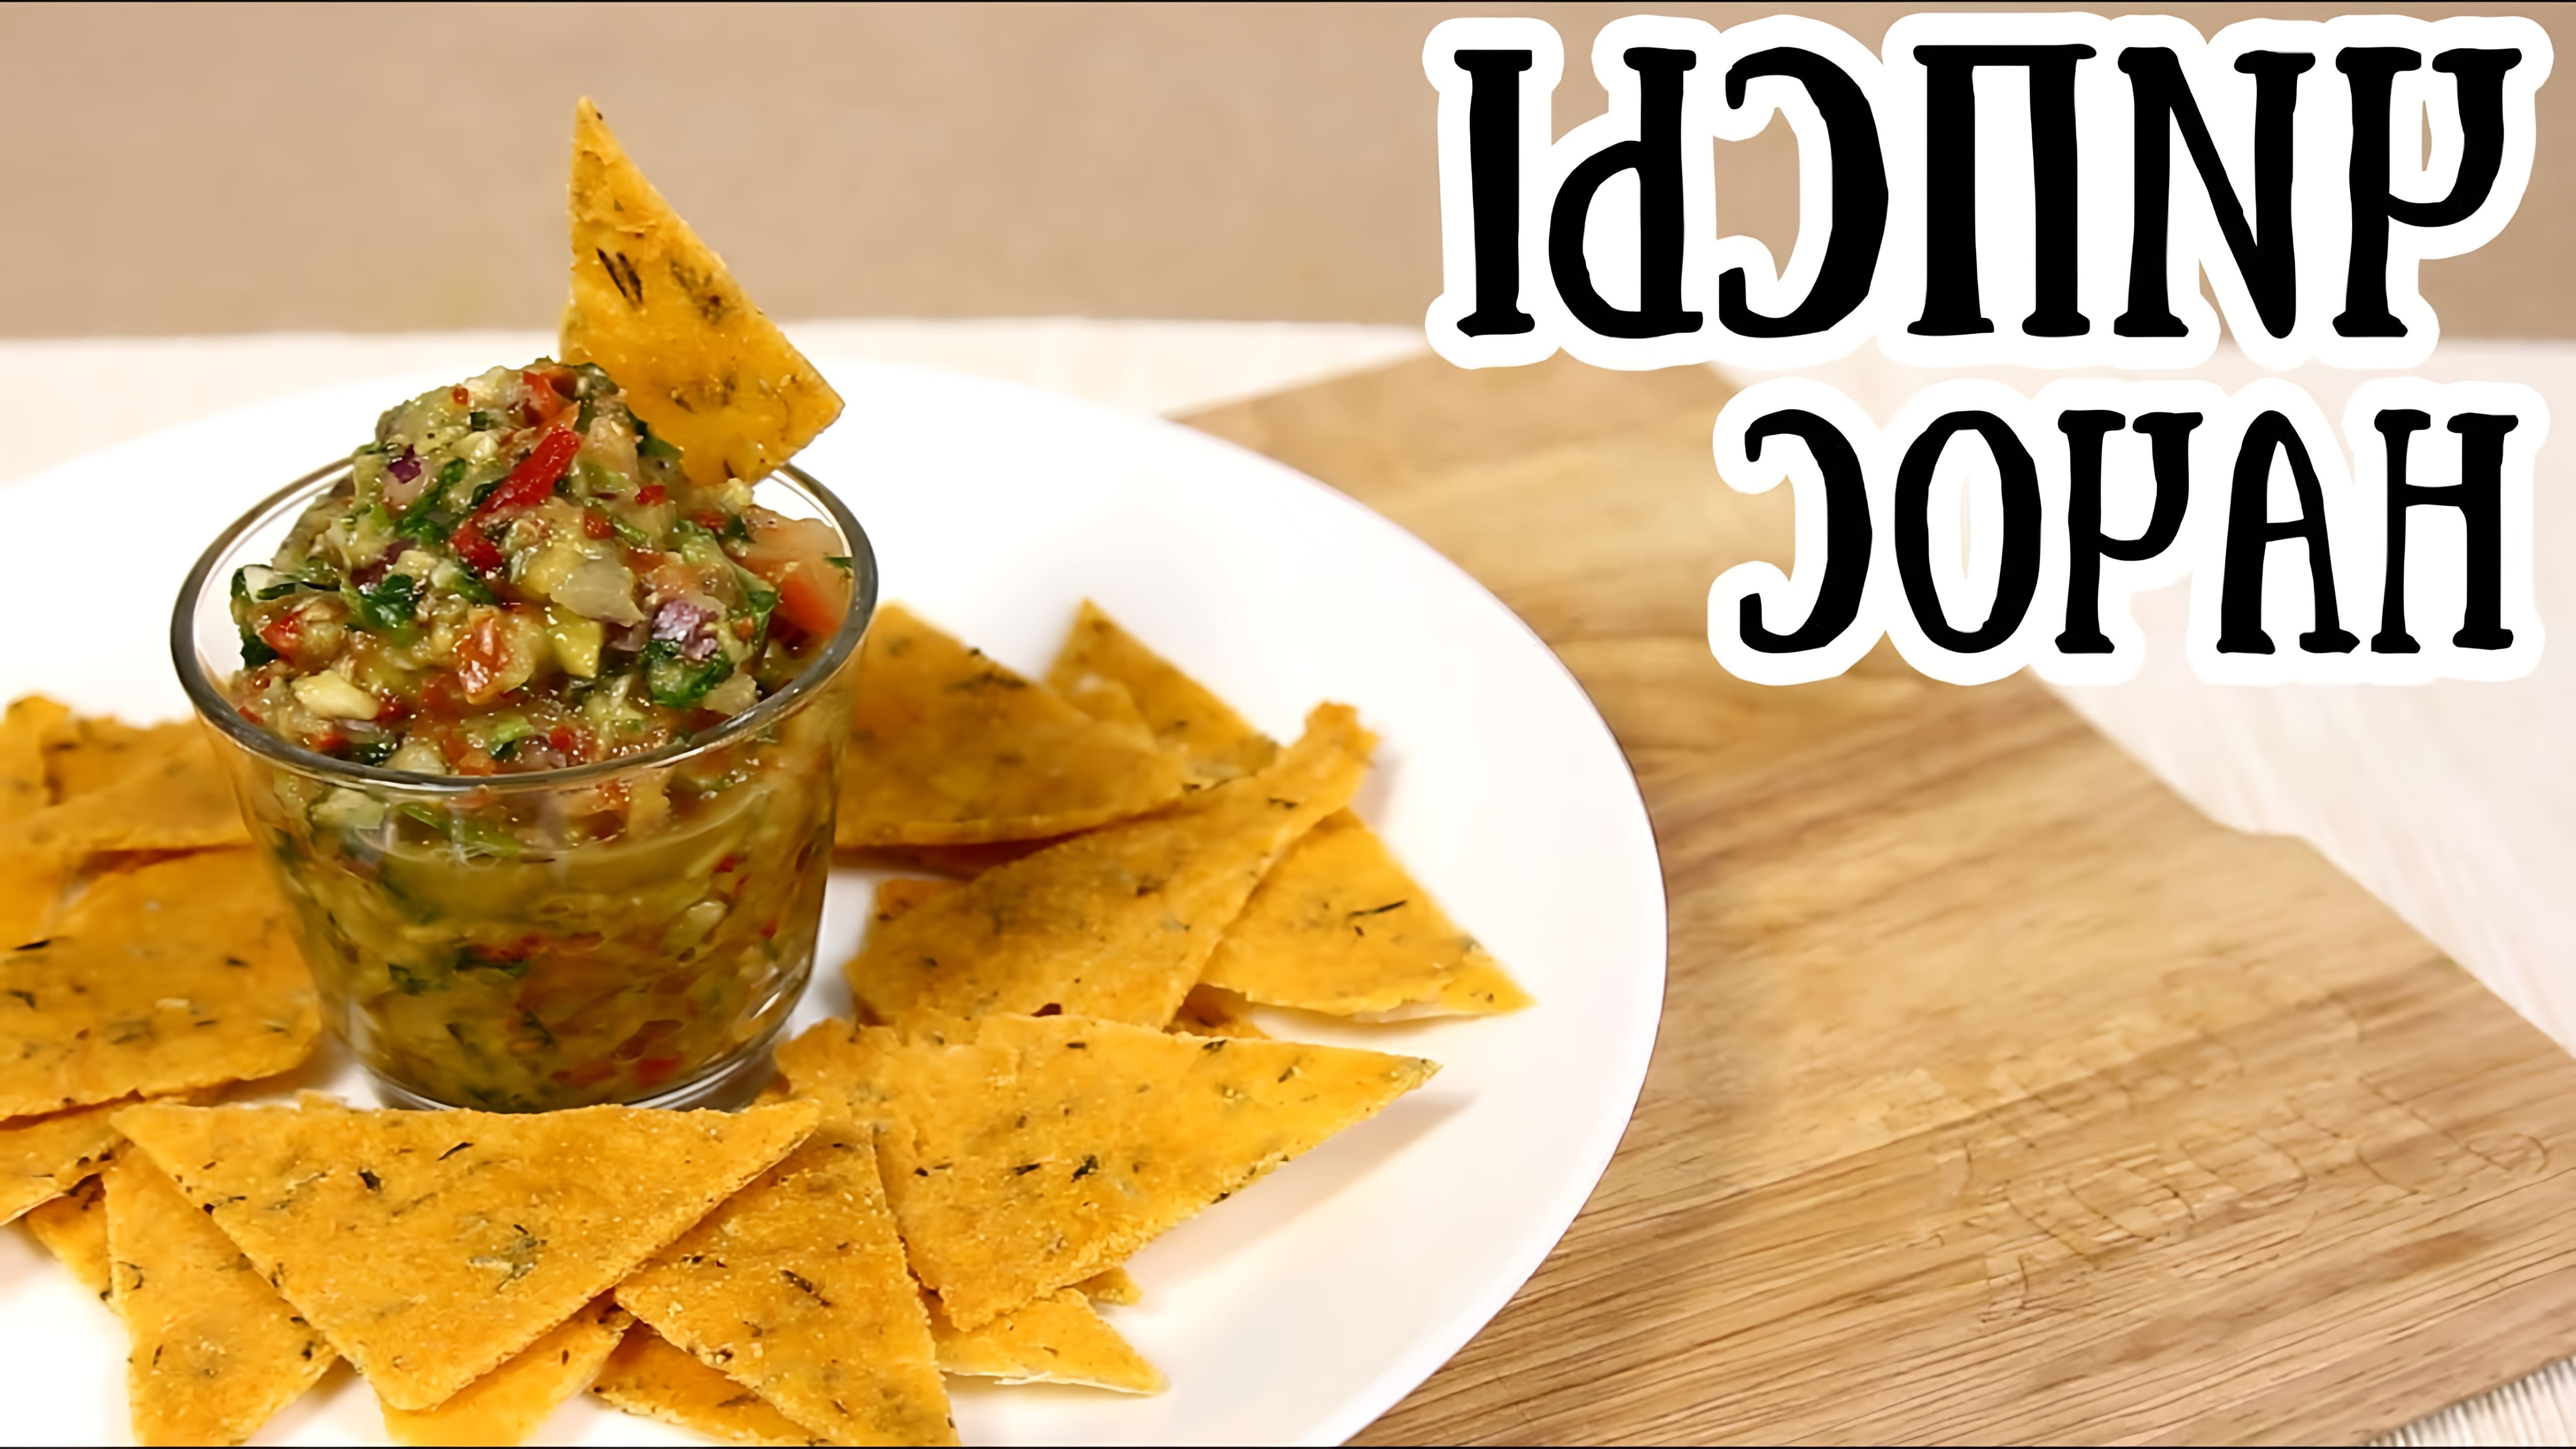 В этом видео-ролике будет показан рецепт приготовления кукурузных чипсов Начос в духовке, который является традиционным блюдом мексиканской кухни